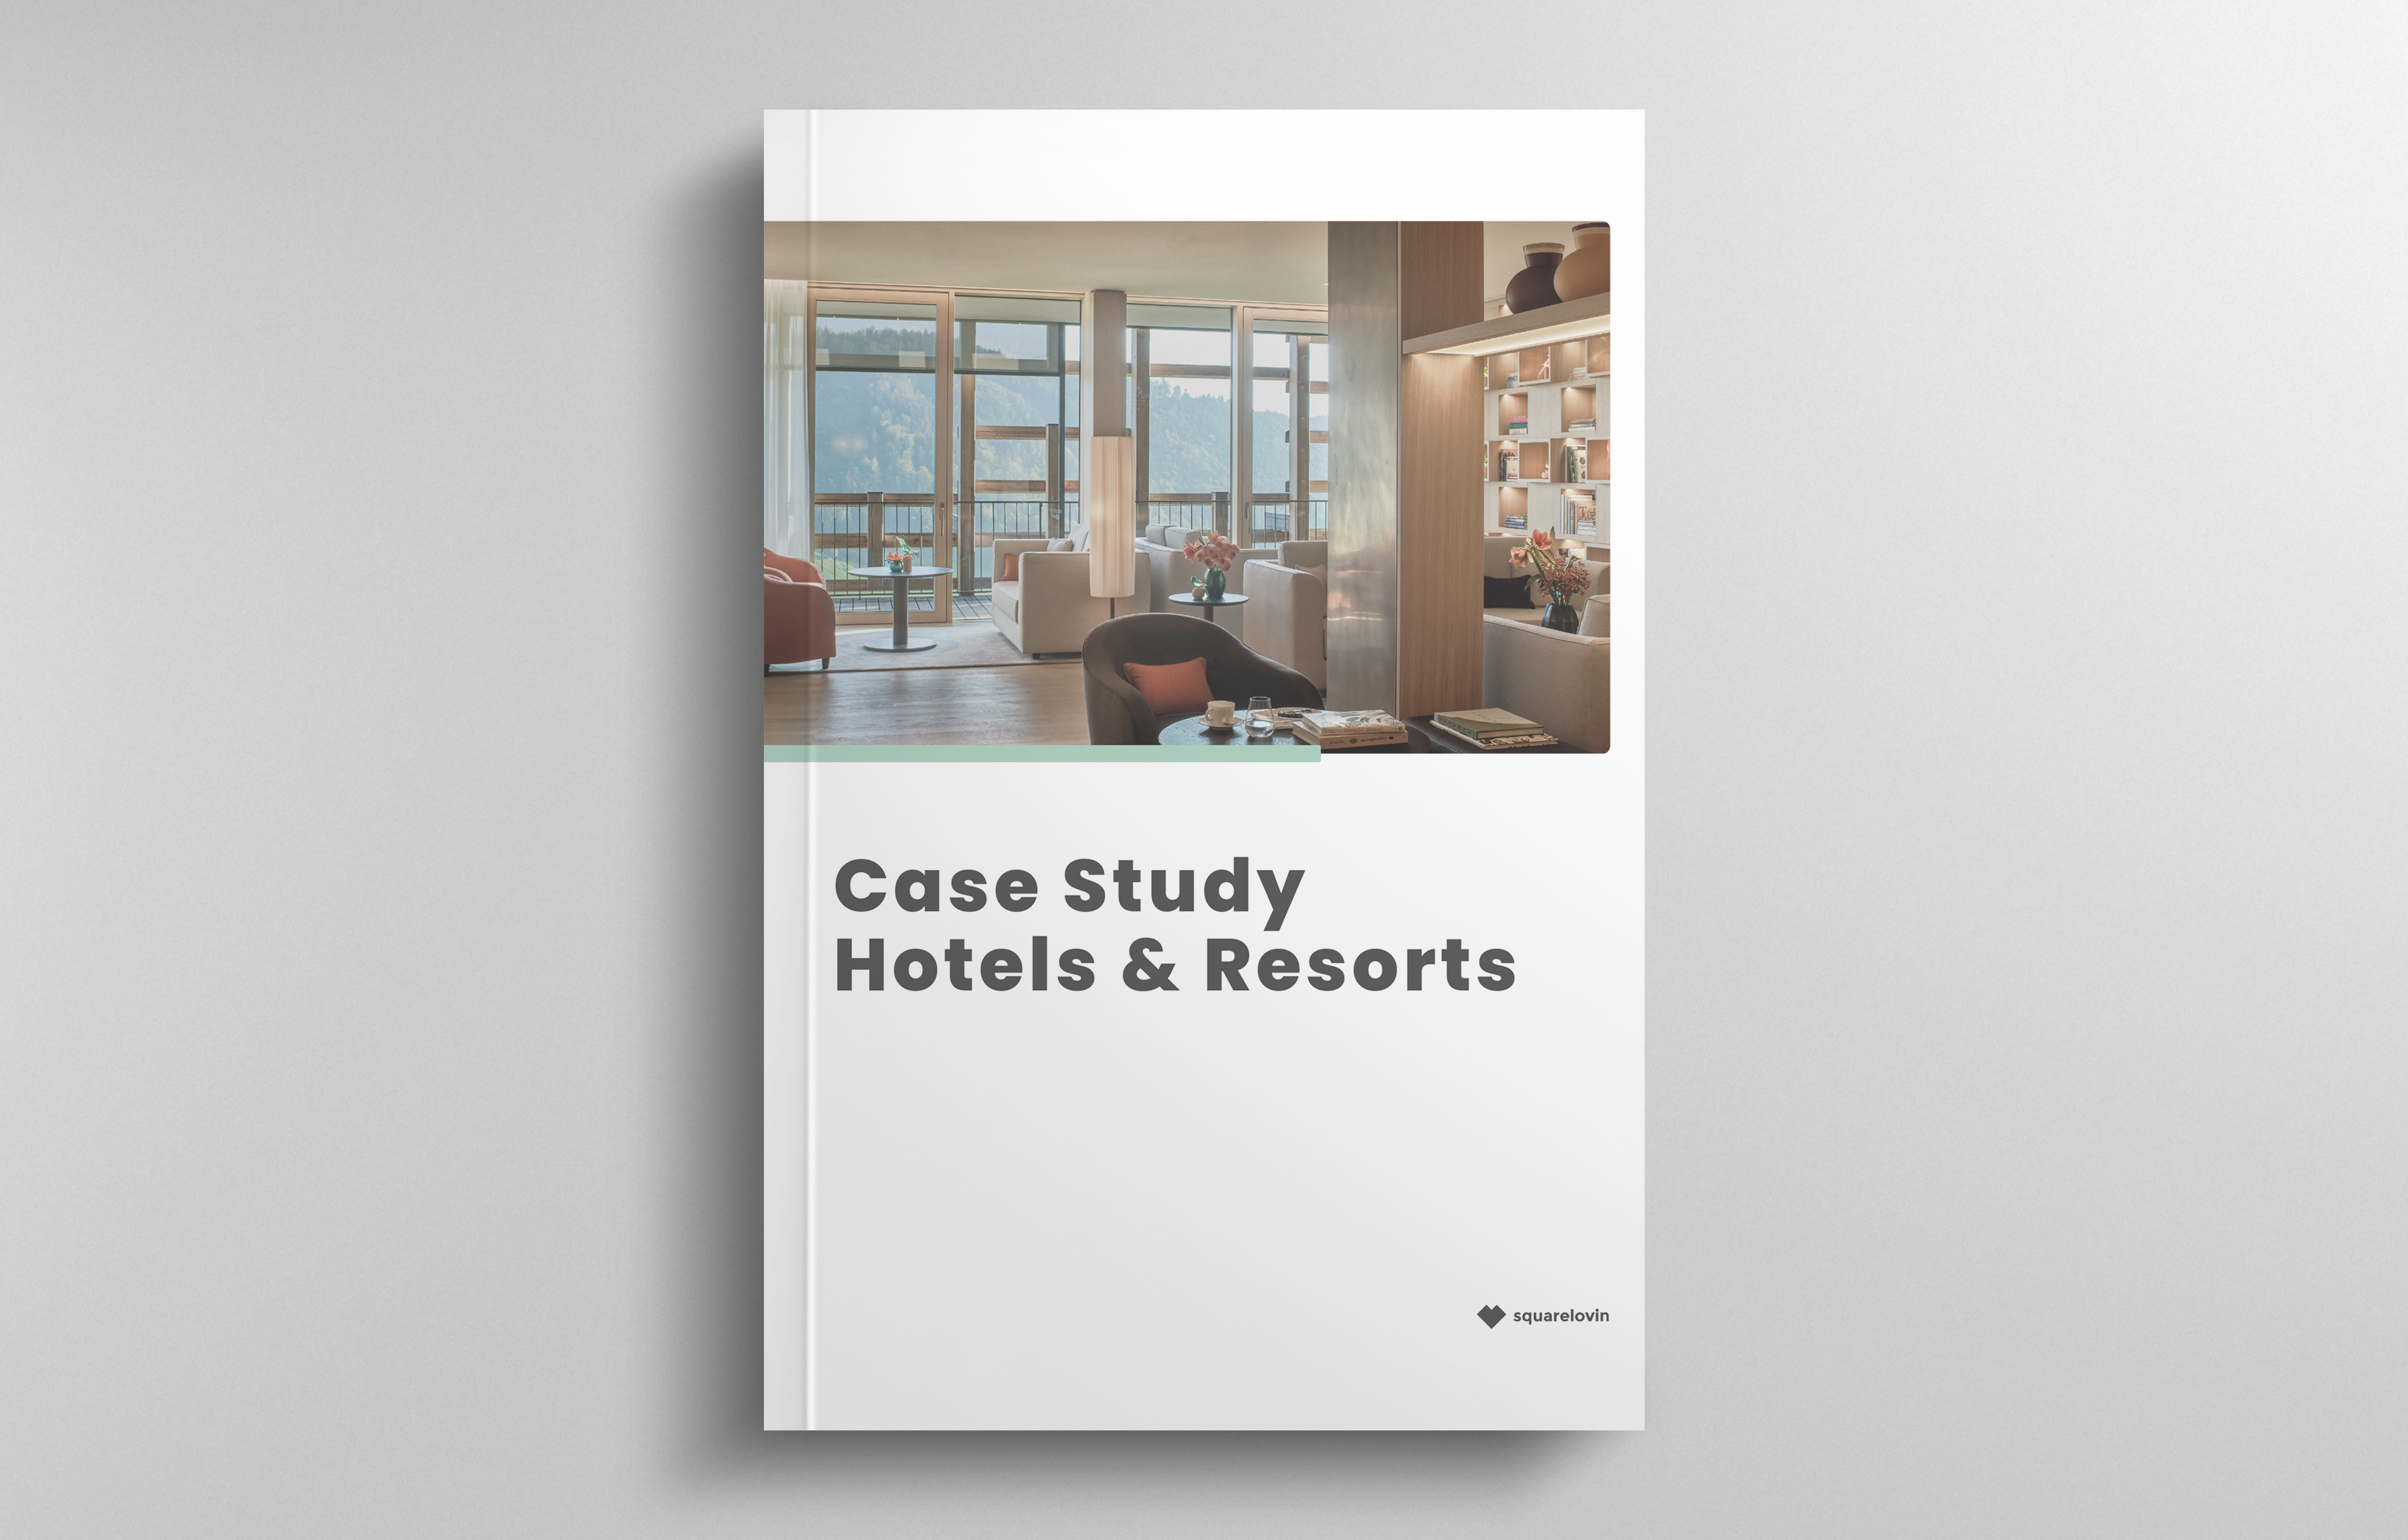 Geschützt: Case Study Hotels & Resorts